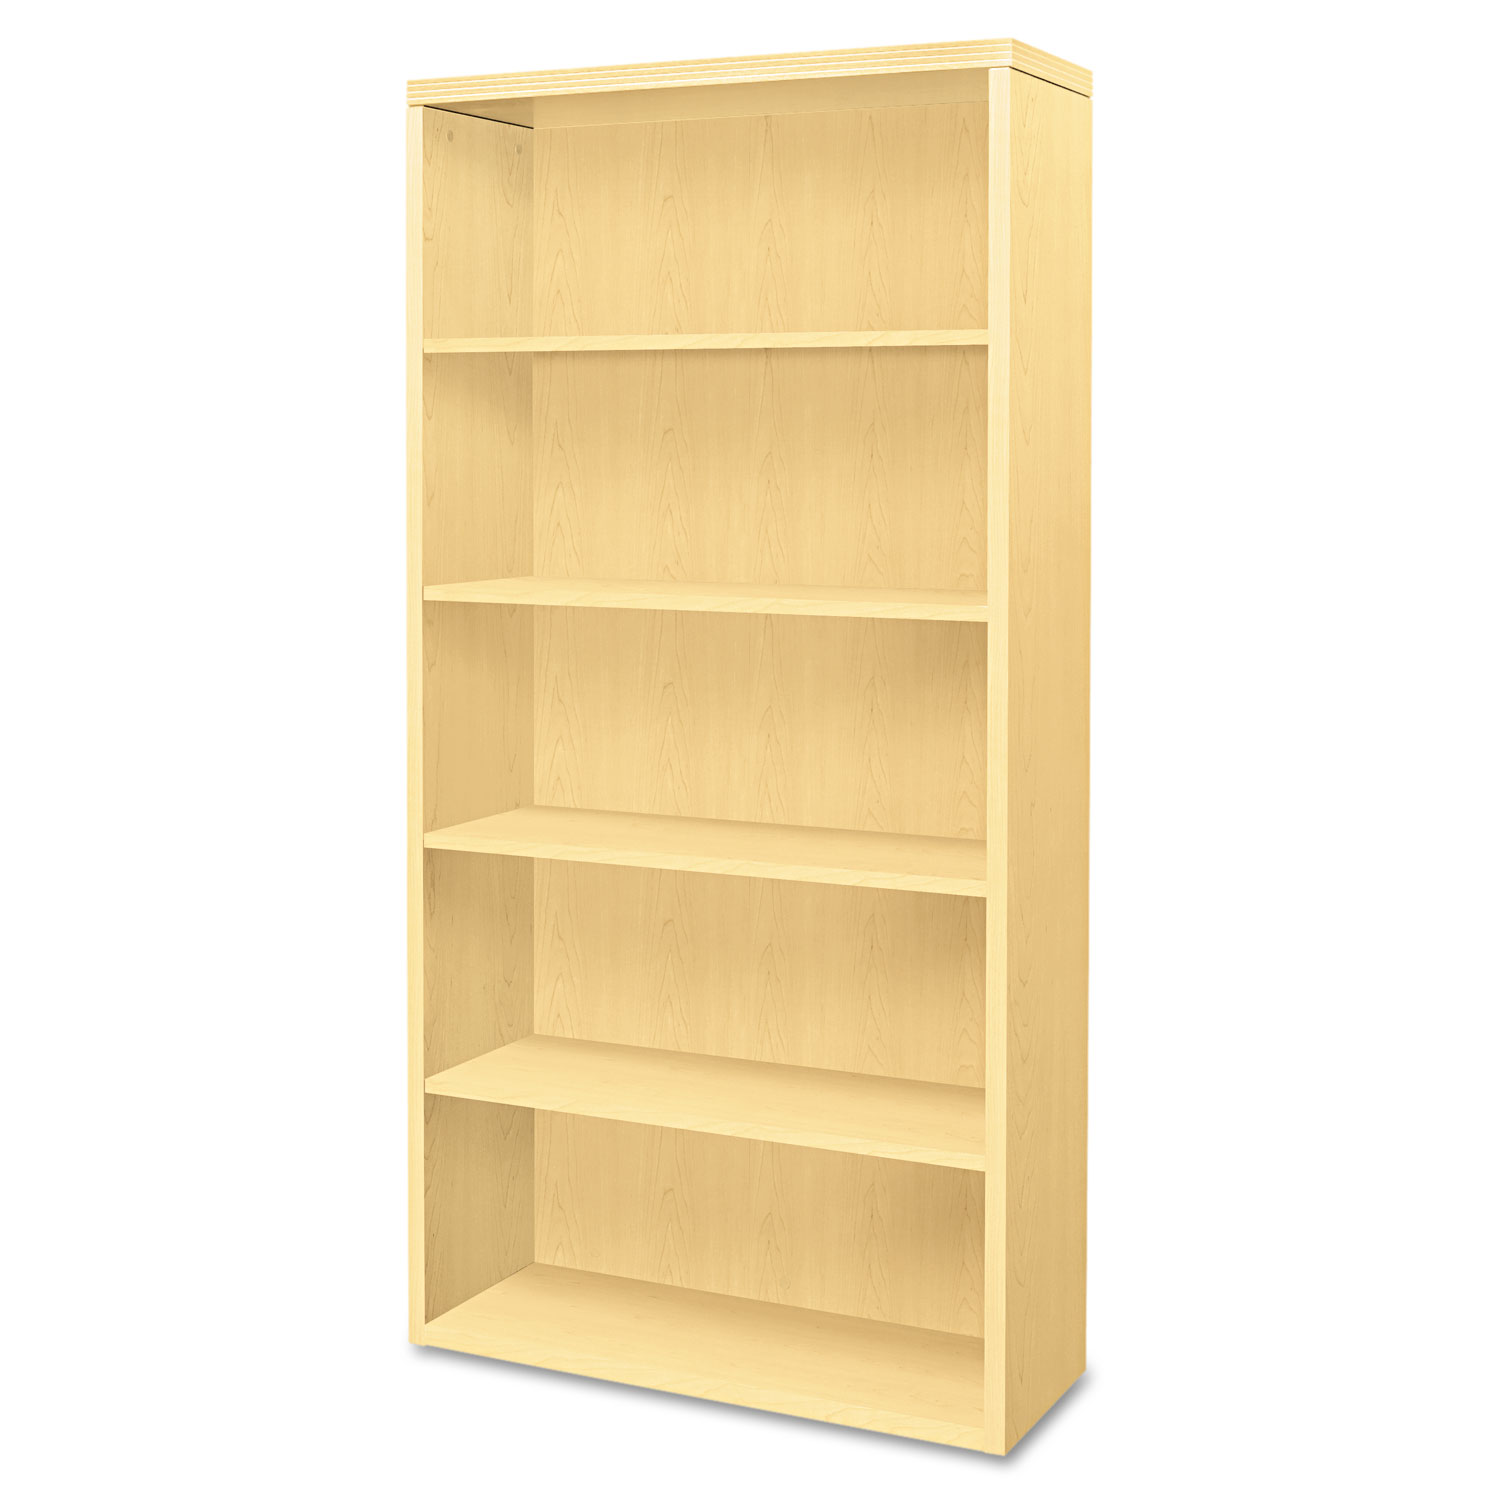  HON H11555.A.DD Valido Series Bookcase, Five-Shelf, 36w x 13-1/8d x 71h, Natural Maple (HON11555AXDD) 